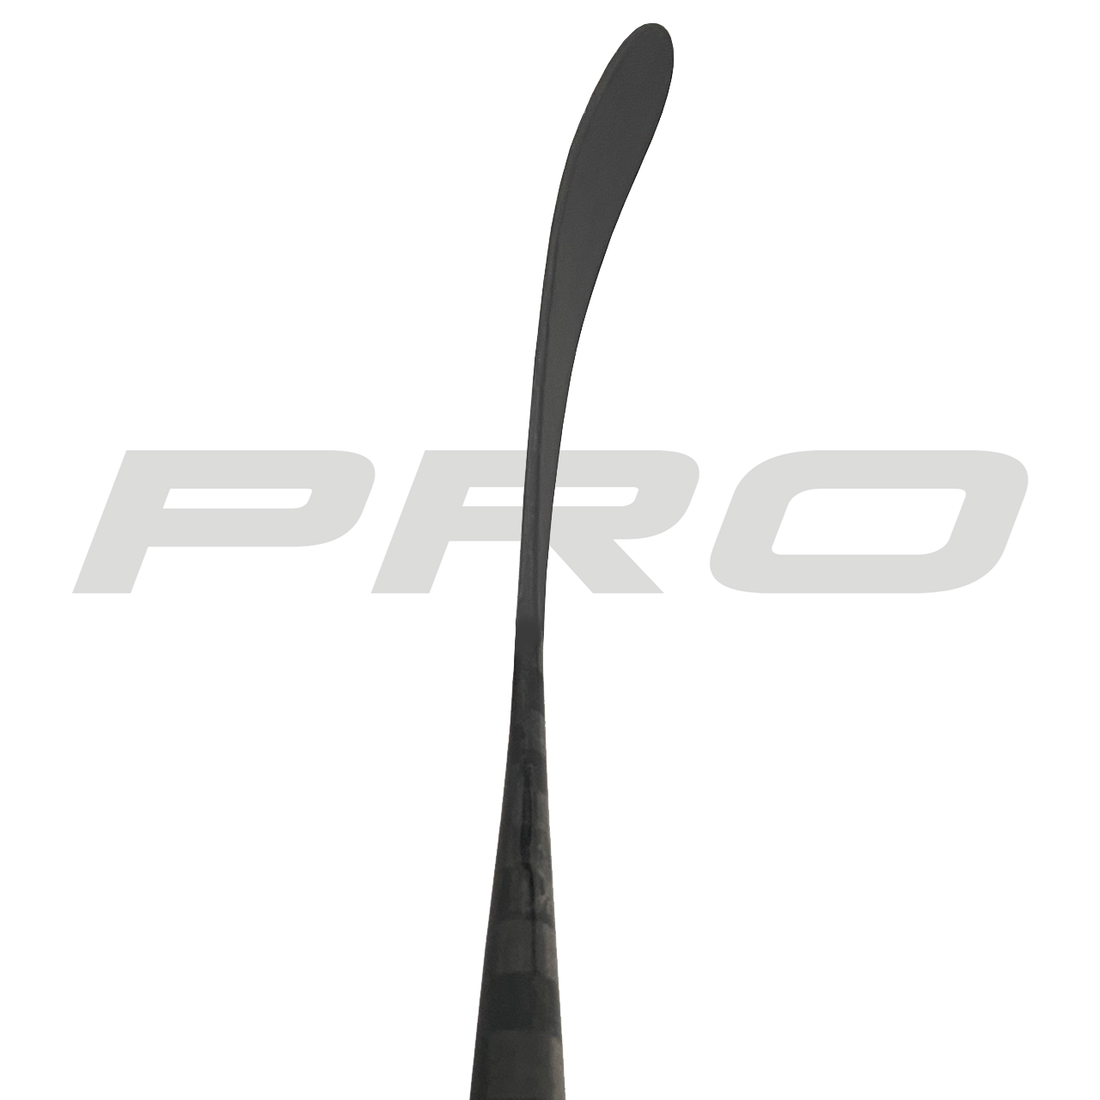 PRO272 (ST: Kovalev Pro) - Third Line (425 G) - Pro Stock Hockey Stick - Left